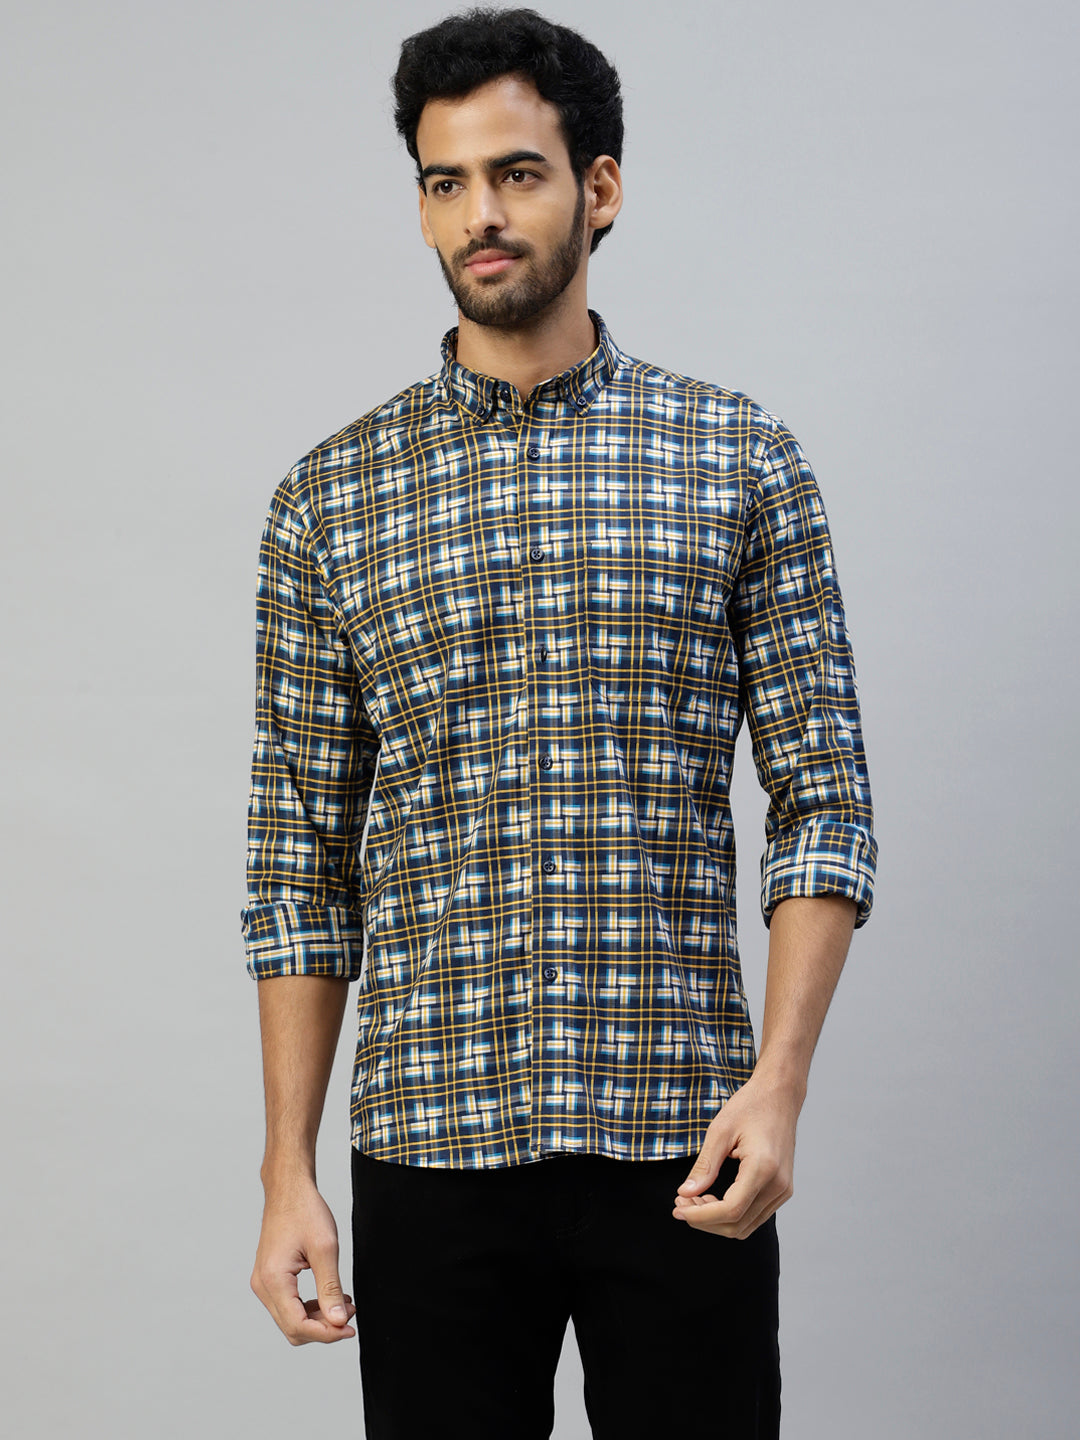 Don Vino Multi Coloured Small Checks Full Sleeves Shirt For Men